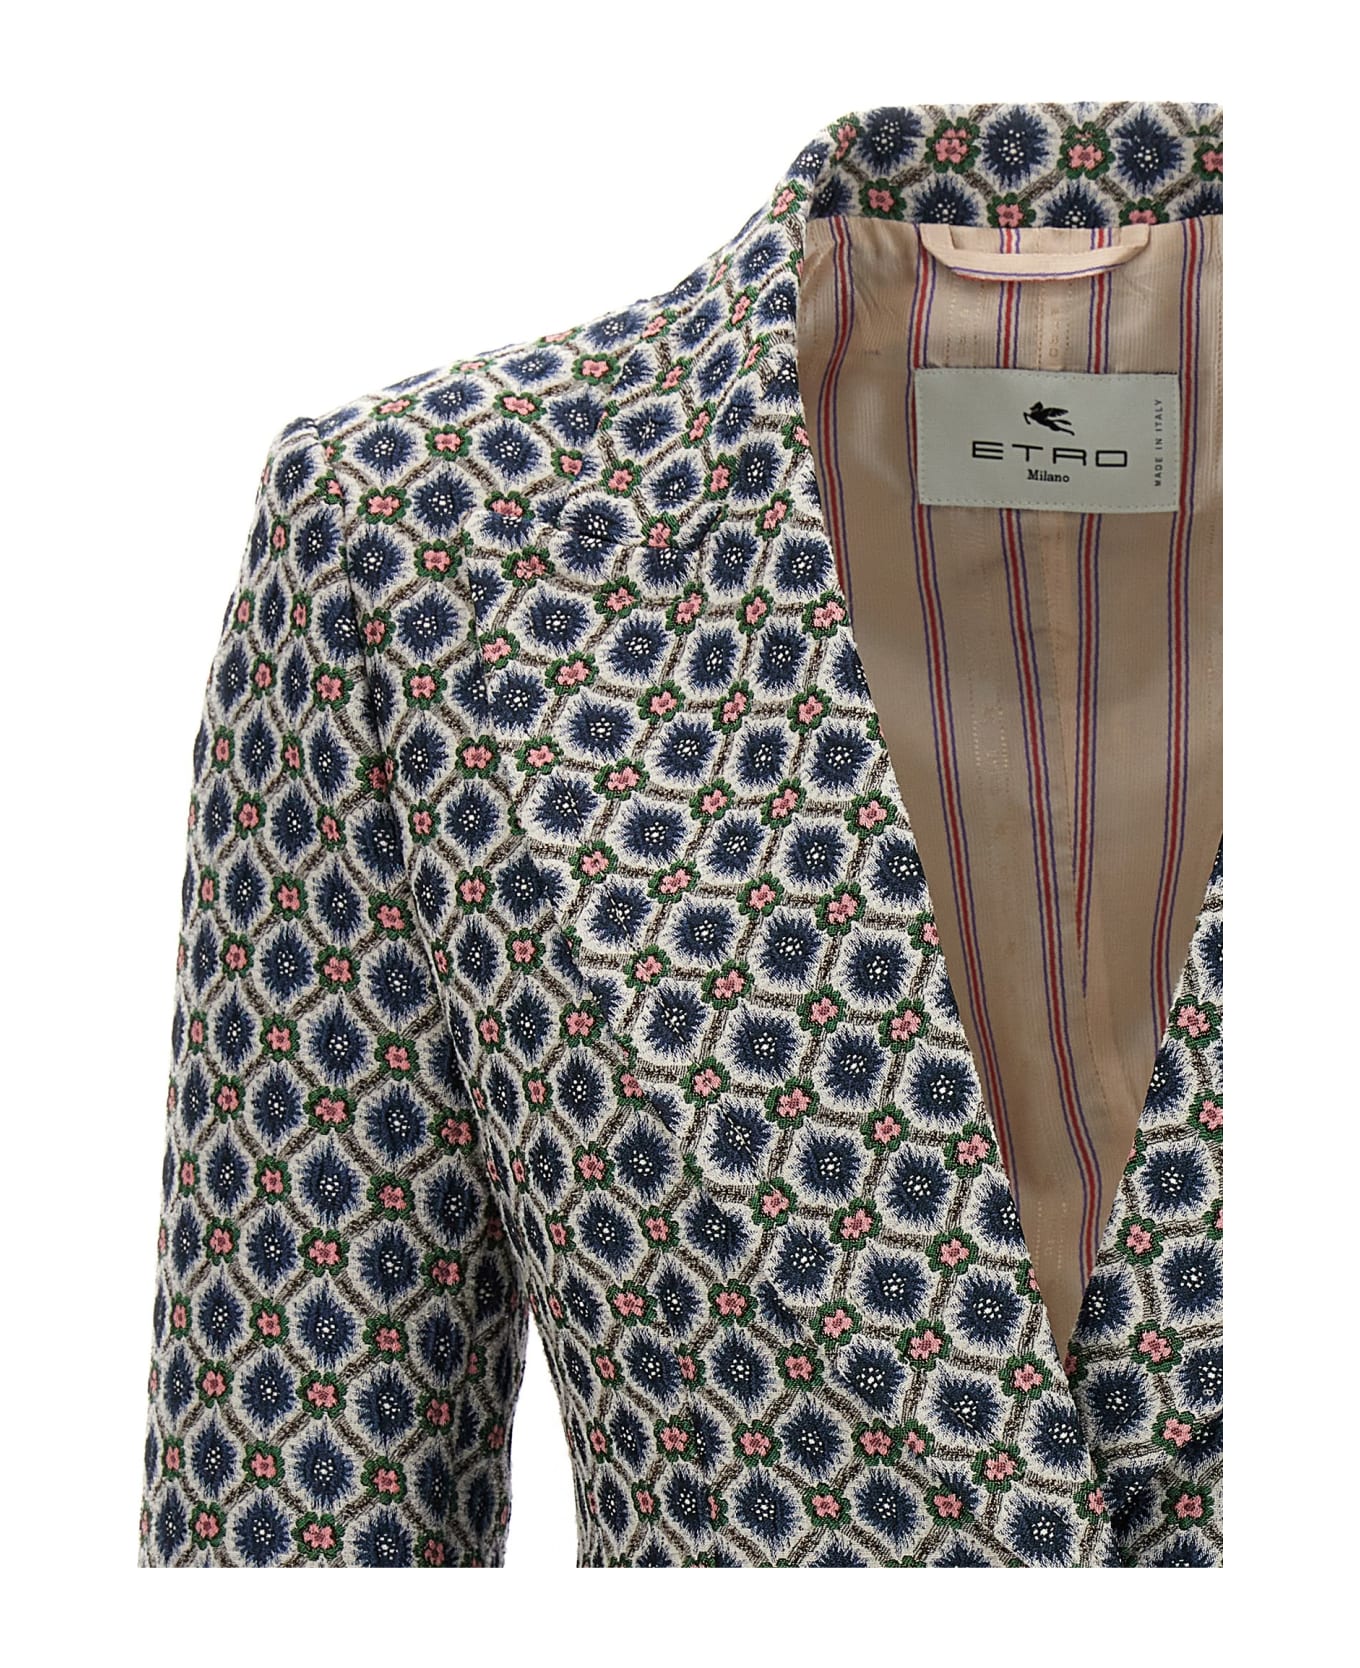 Etro Floral Jacquard Blazer Jacket - Multicolor